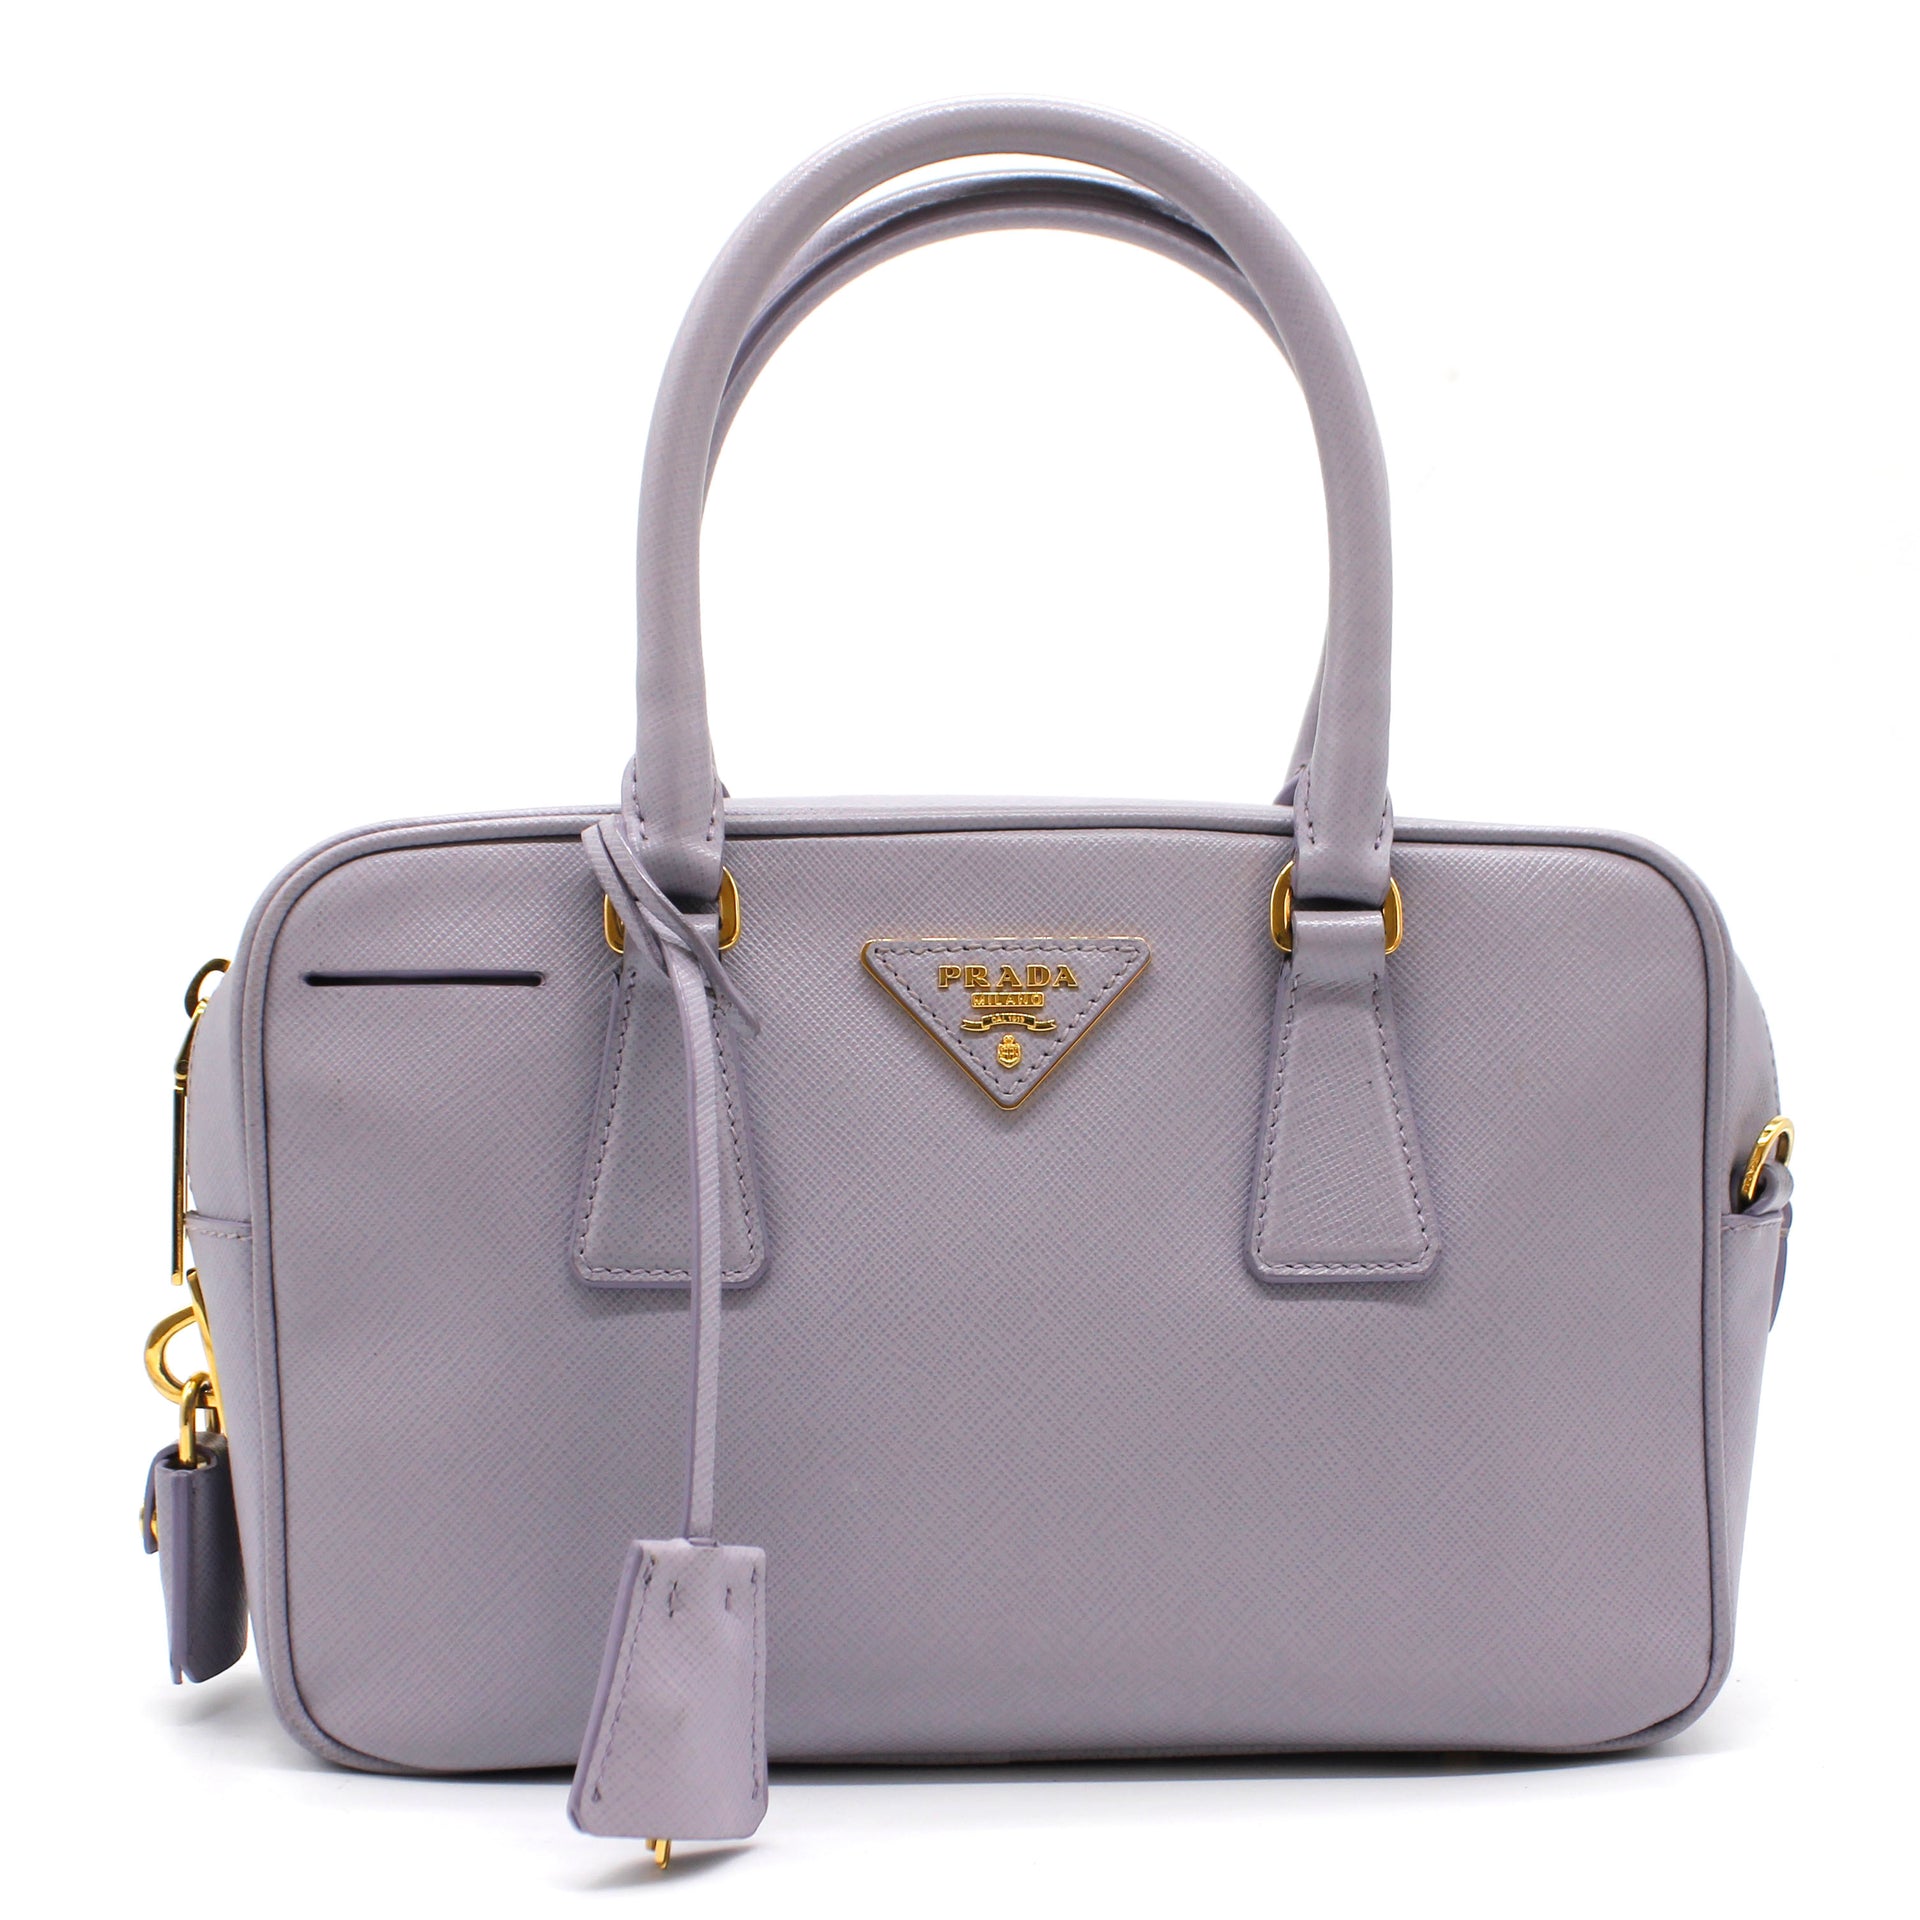 Rare Prada Bauletto Saffiano Lux Handbag Cert. of Authenticity Two-Tone Gray